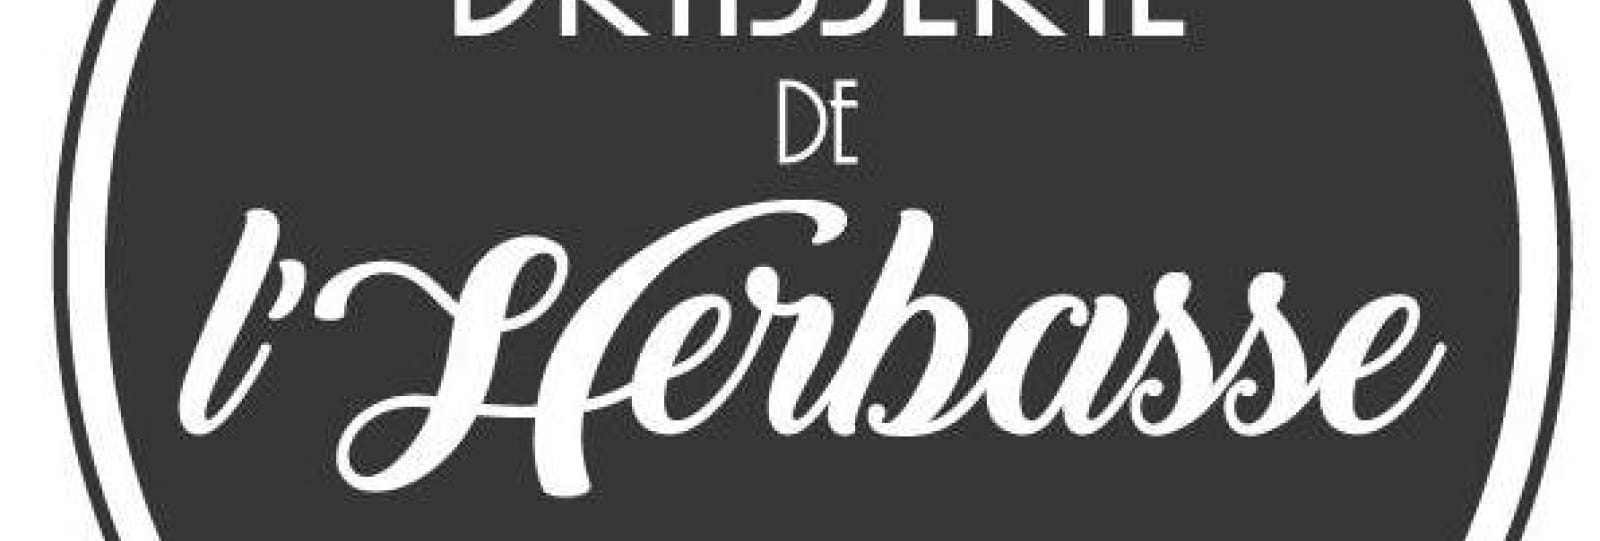 Brasserie de l'Herbasse